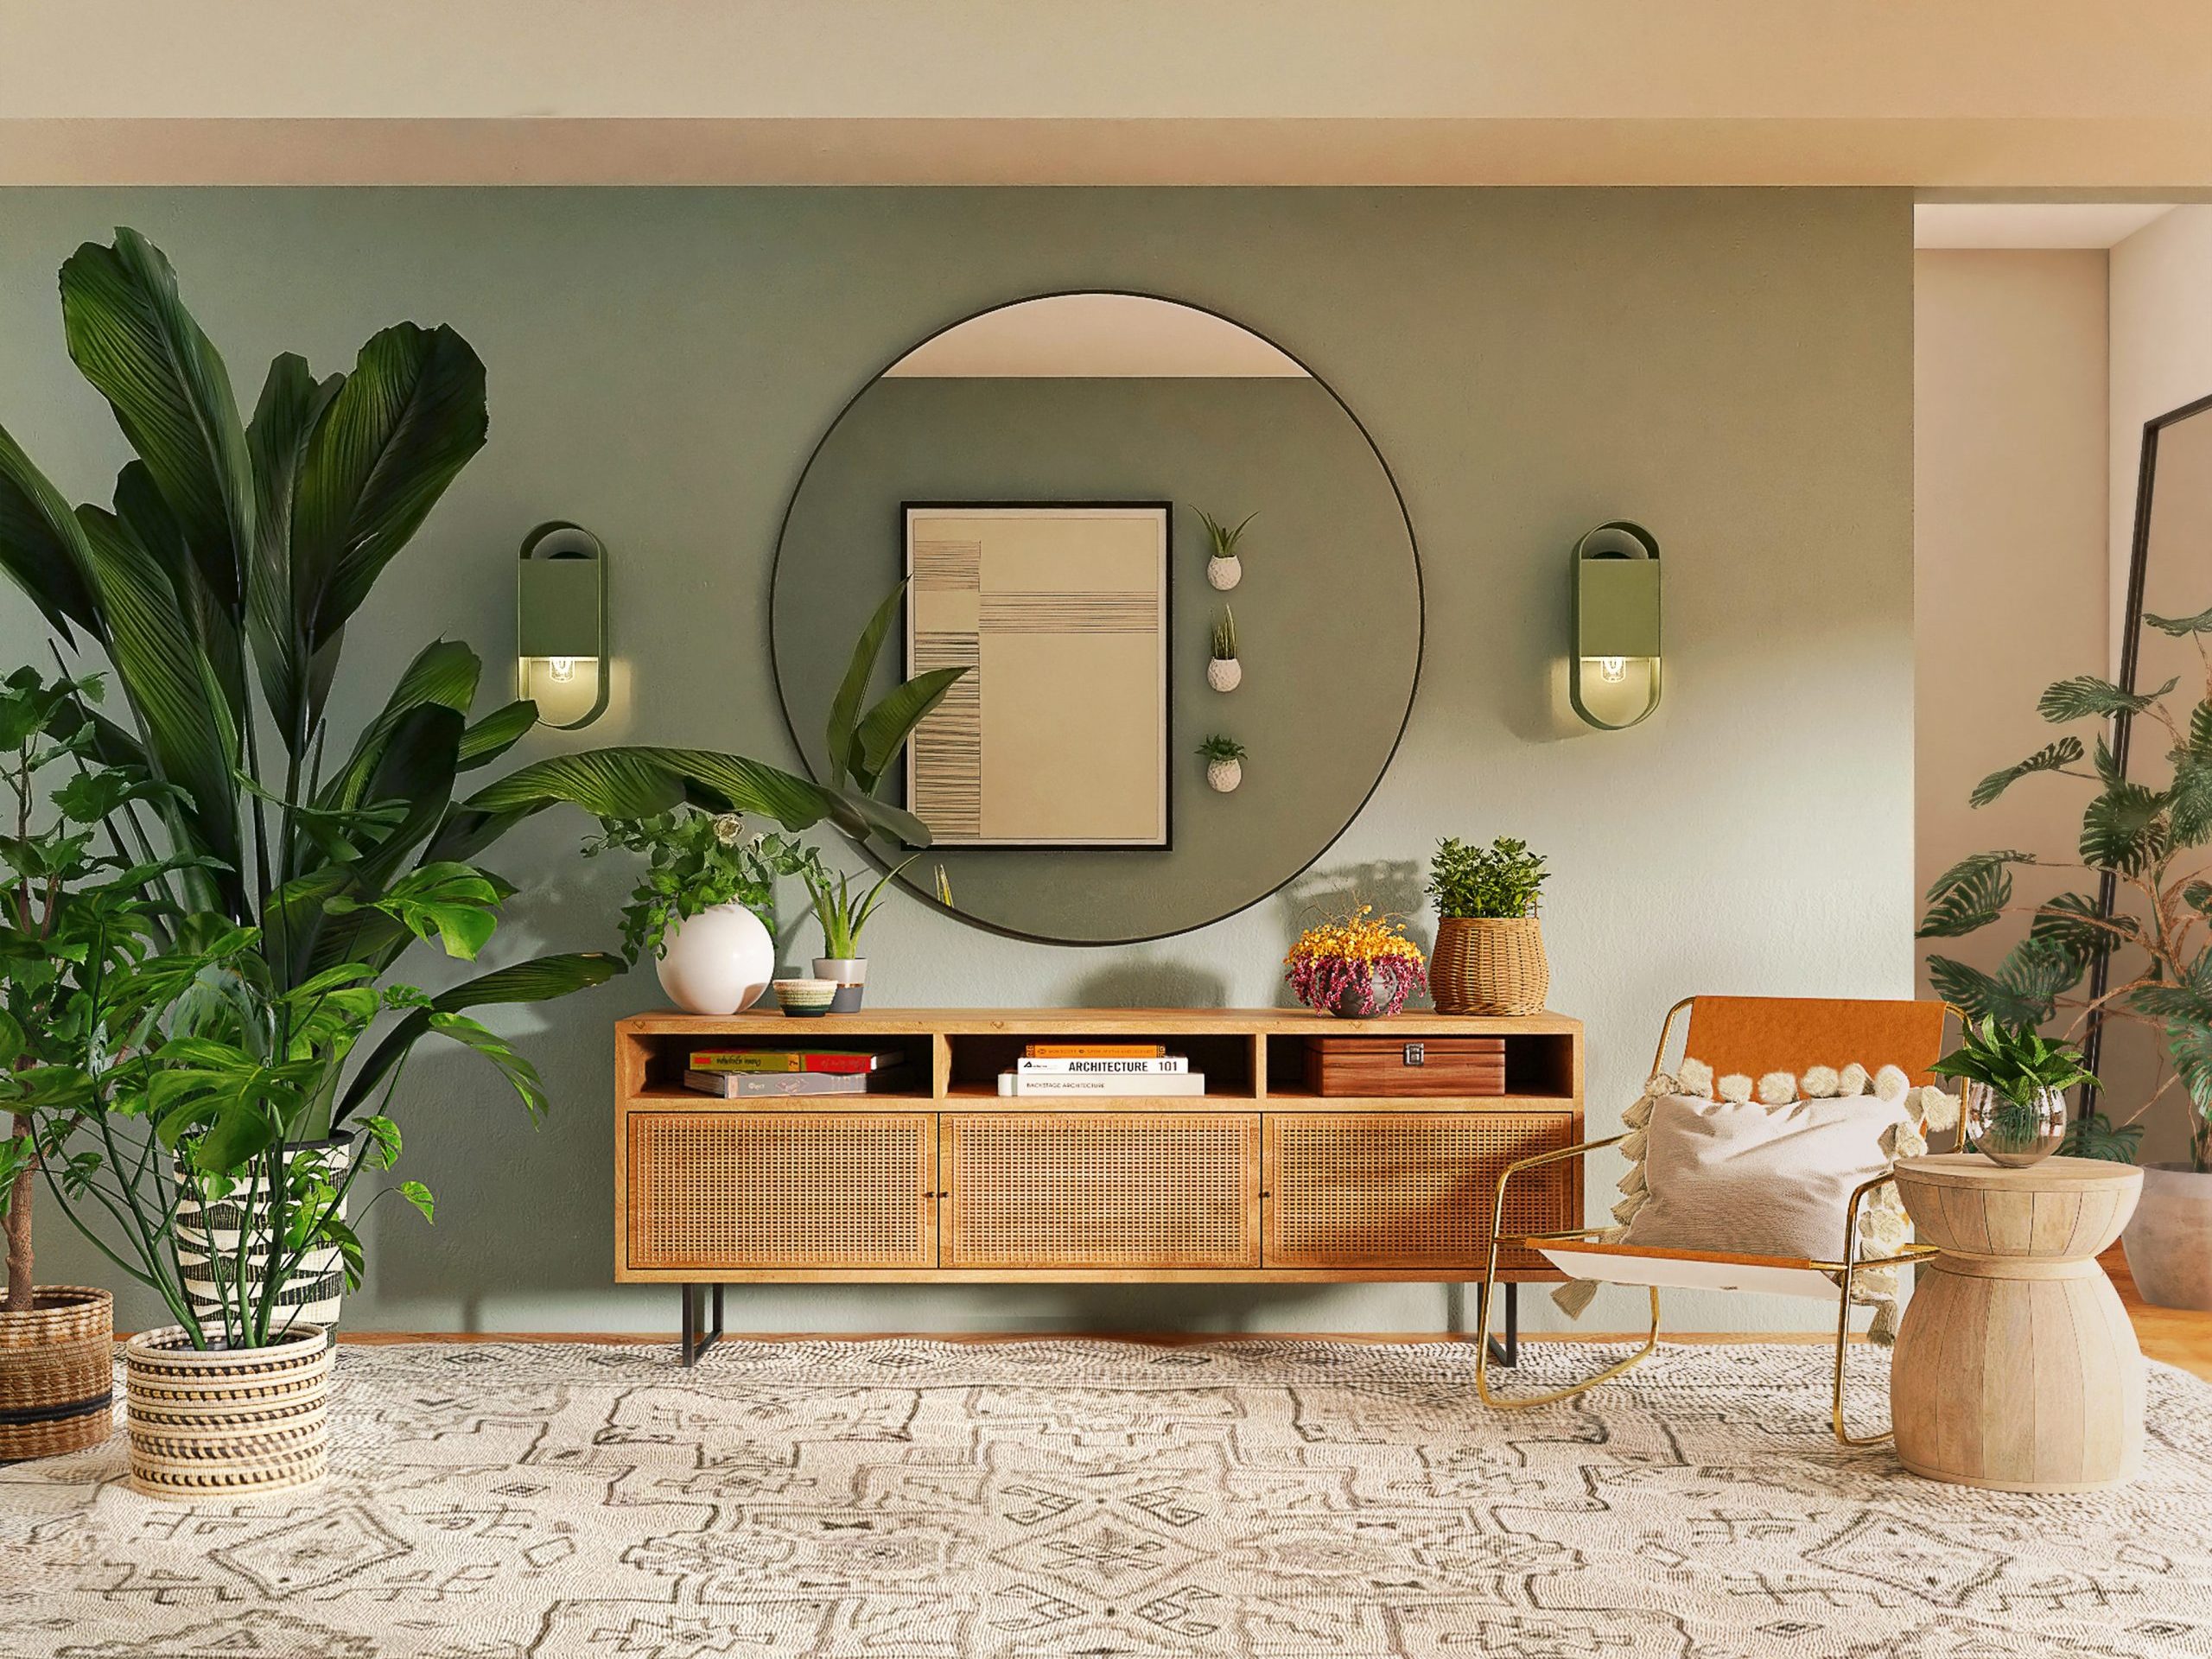 Αγαπημένοι interior designers μοιράζονται 5 trends για το σαλόνι που θα είναι hot το 2022